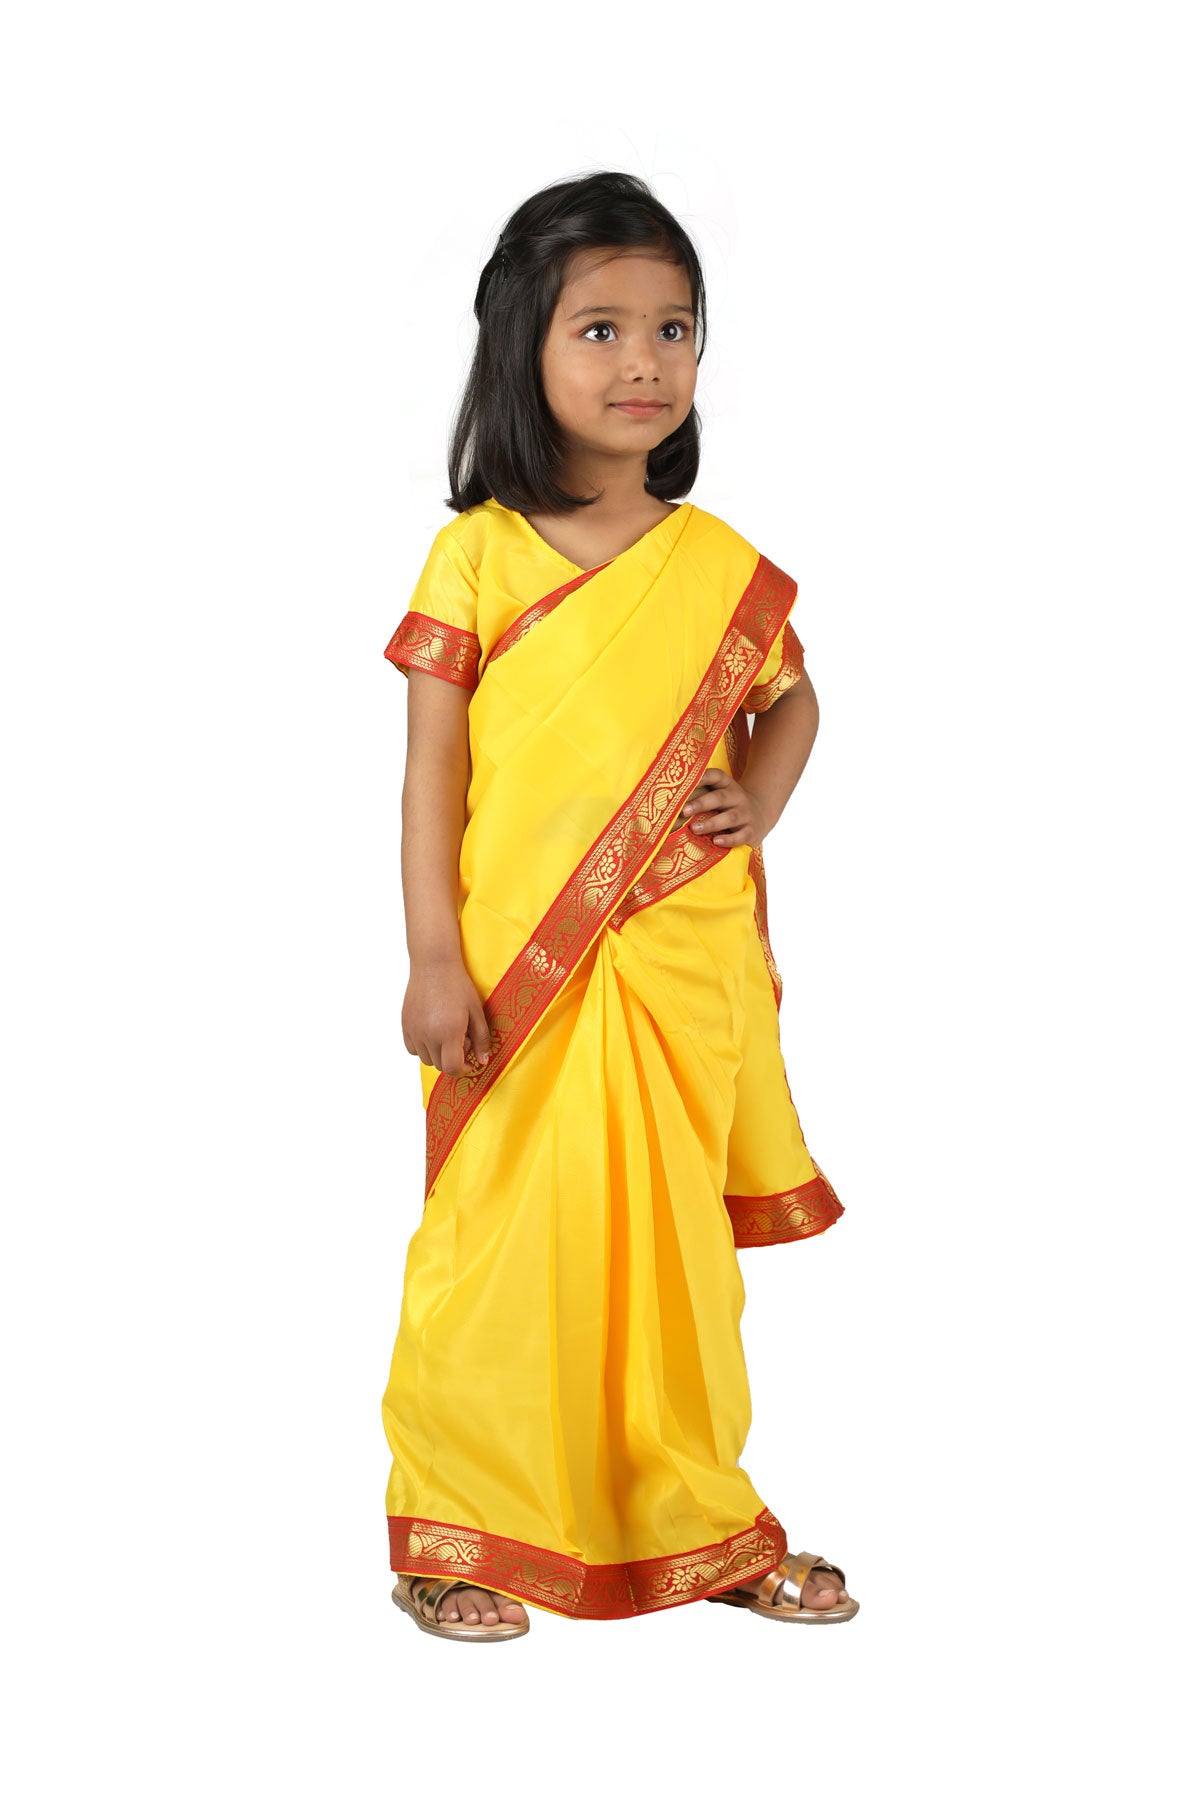 Buy Rent Meera Bai Krishna Girls Fancy Dress Costume Online in India